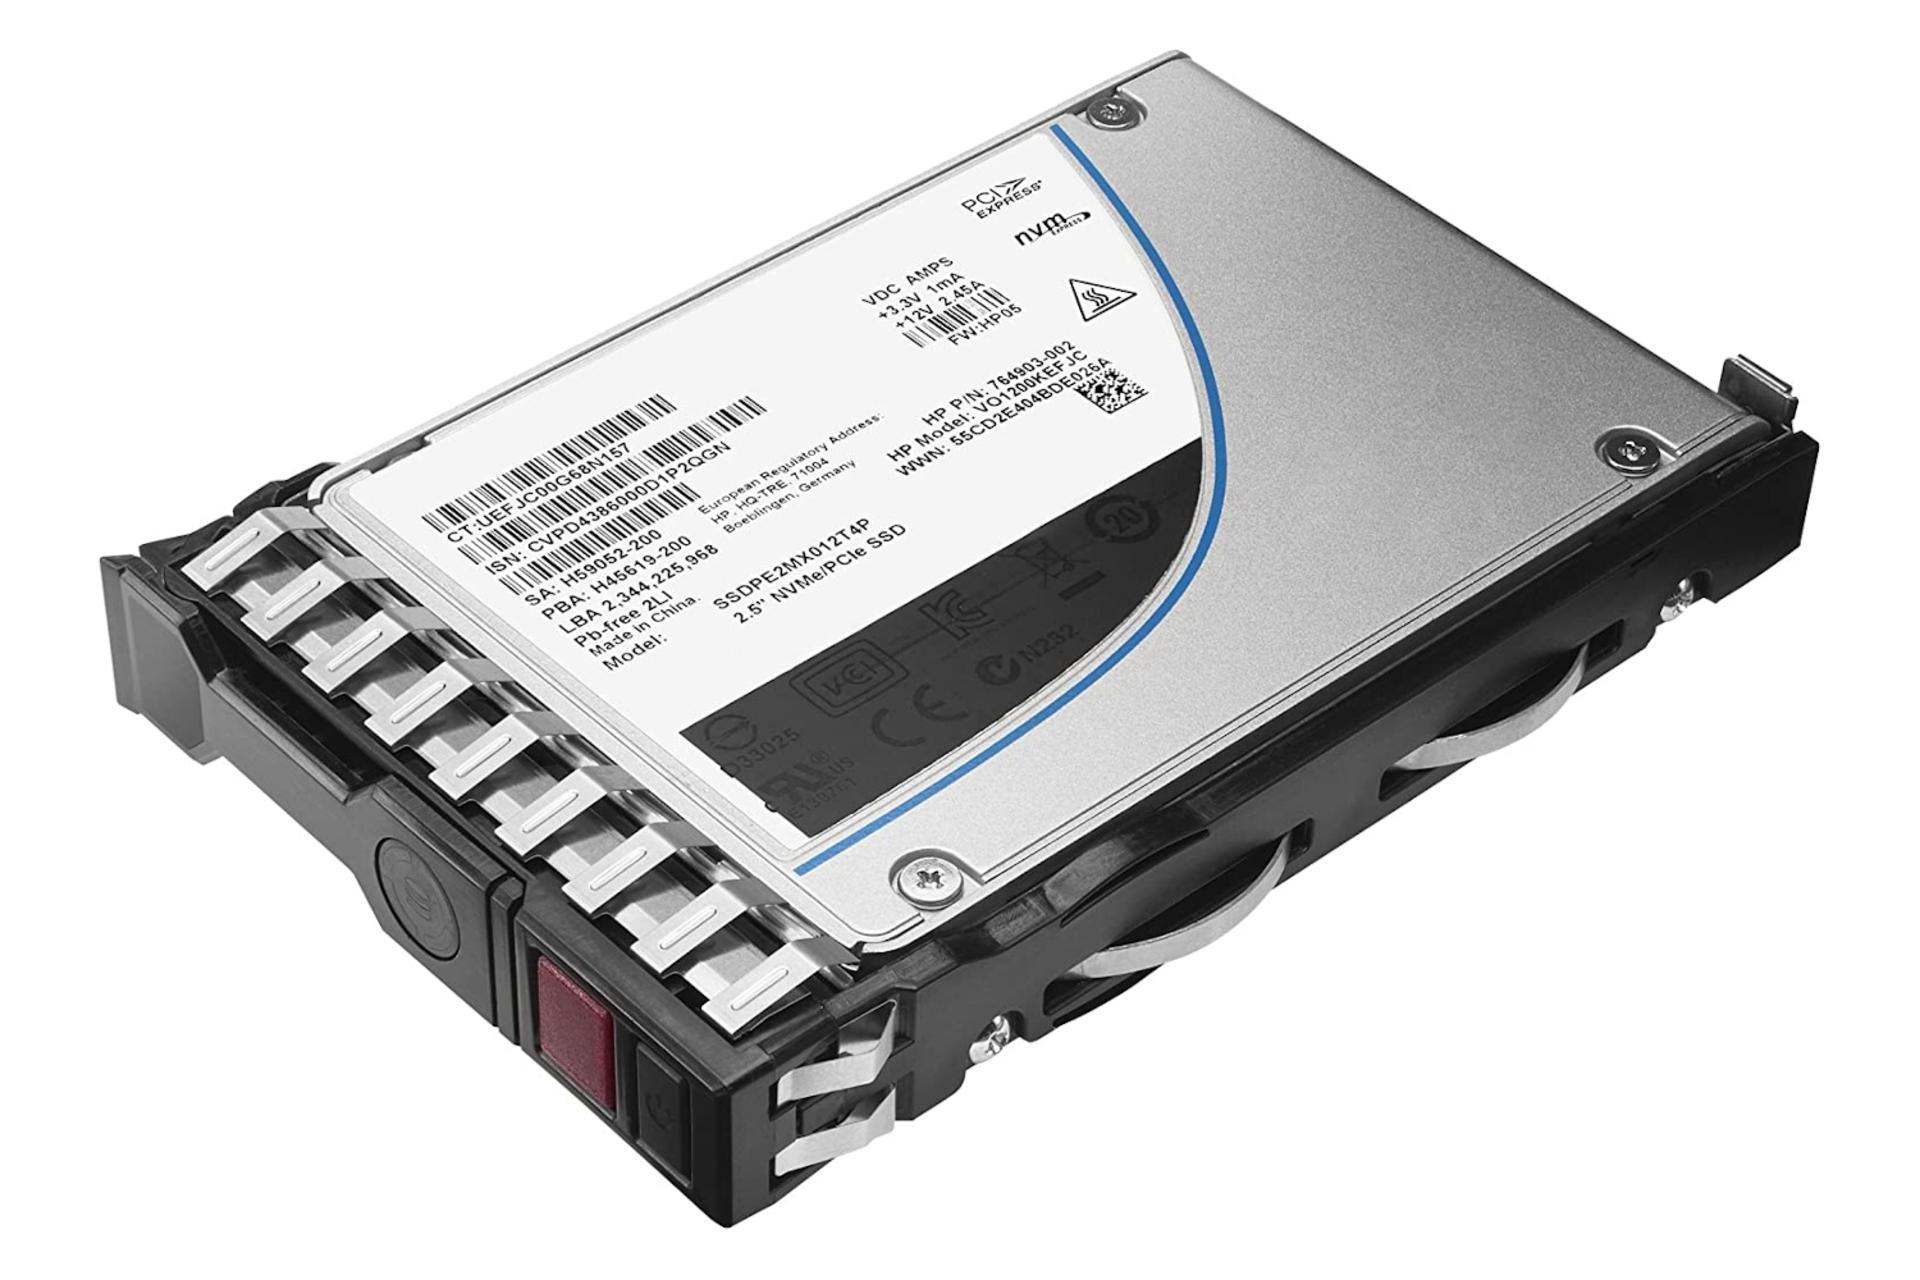 SSD اچ پی HP Mixed Use-2 SATA 2.5 Inch 800GB 804625-B21 ظرفیت 800 گیگابایت